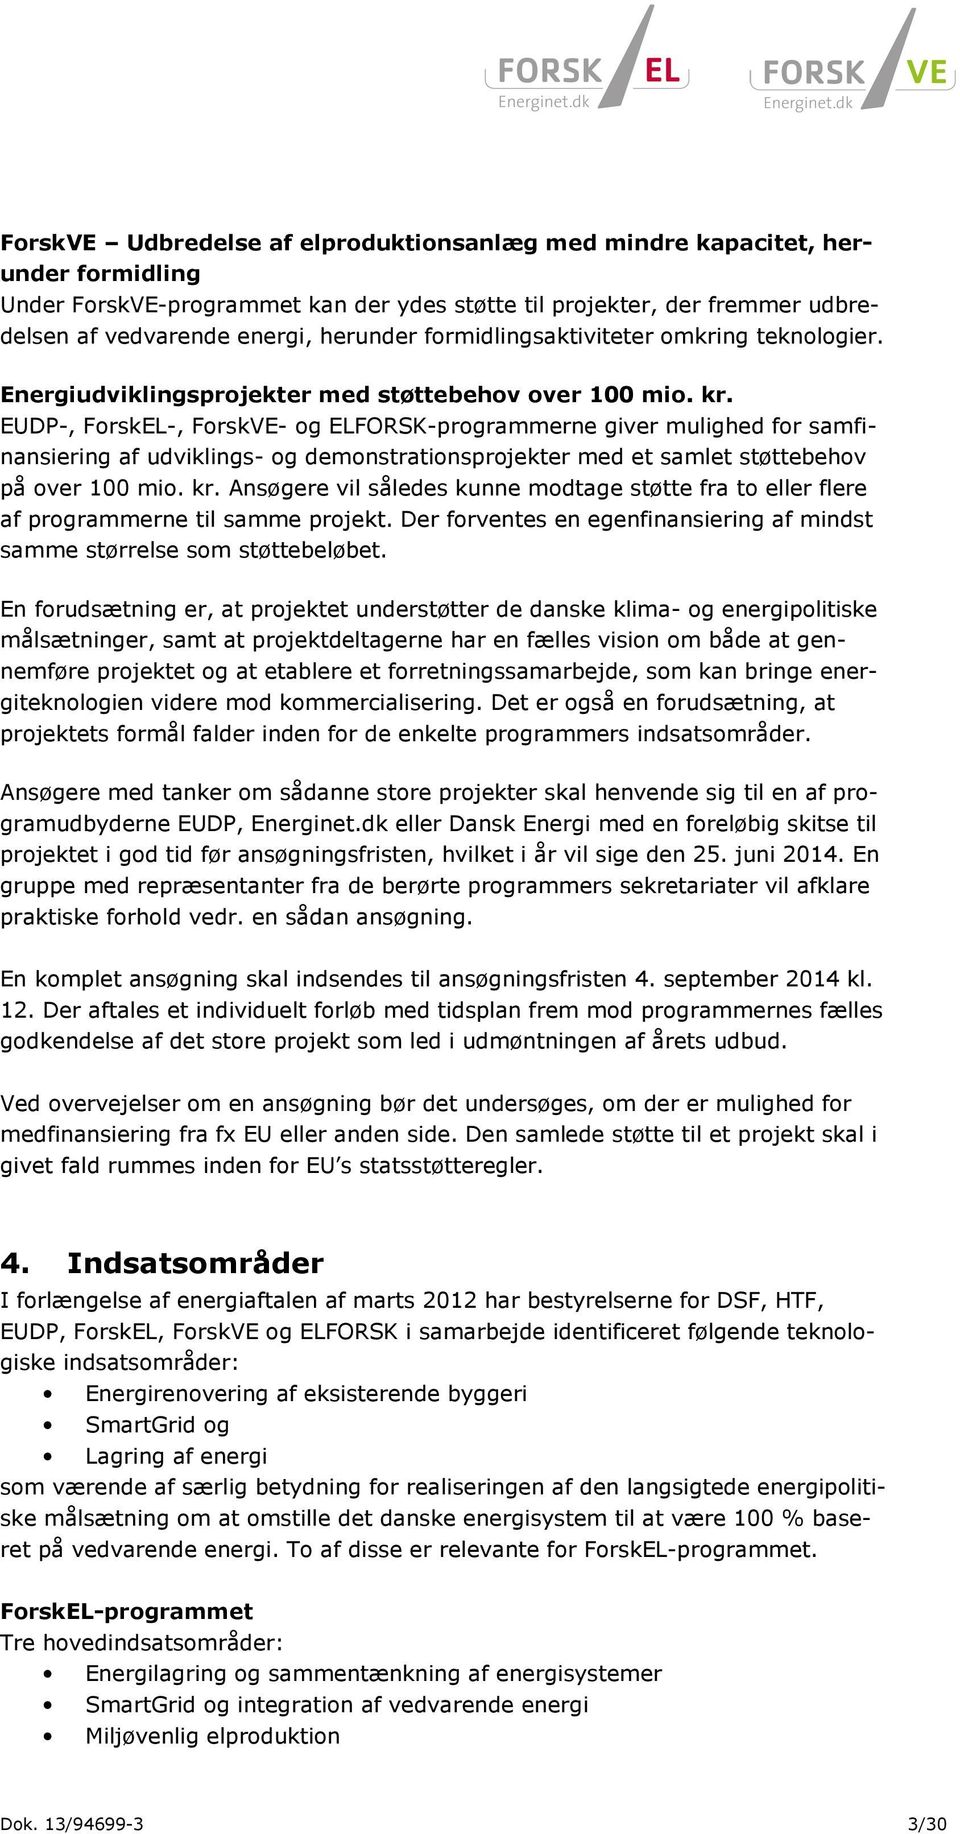 EUDP-, ForskEL-, ForskVE- og ELFORSK-programmerne giver mulighed for samfinansiering af udviklings- og demonstrationsprojekter med et samlet støttebehov på over 100 mio. kr.